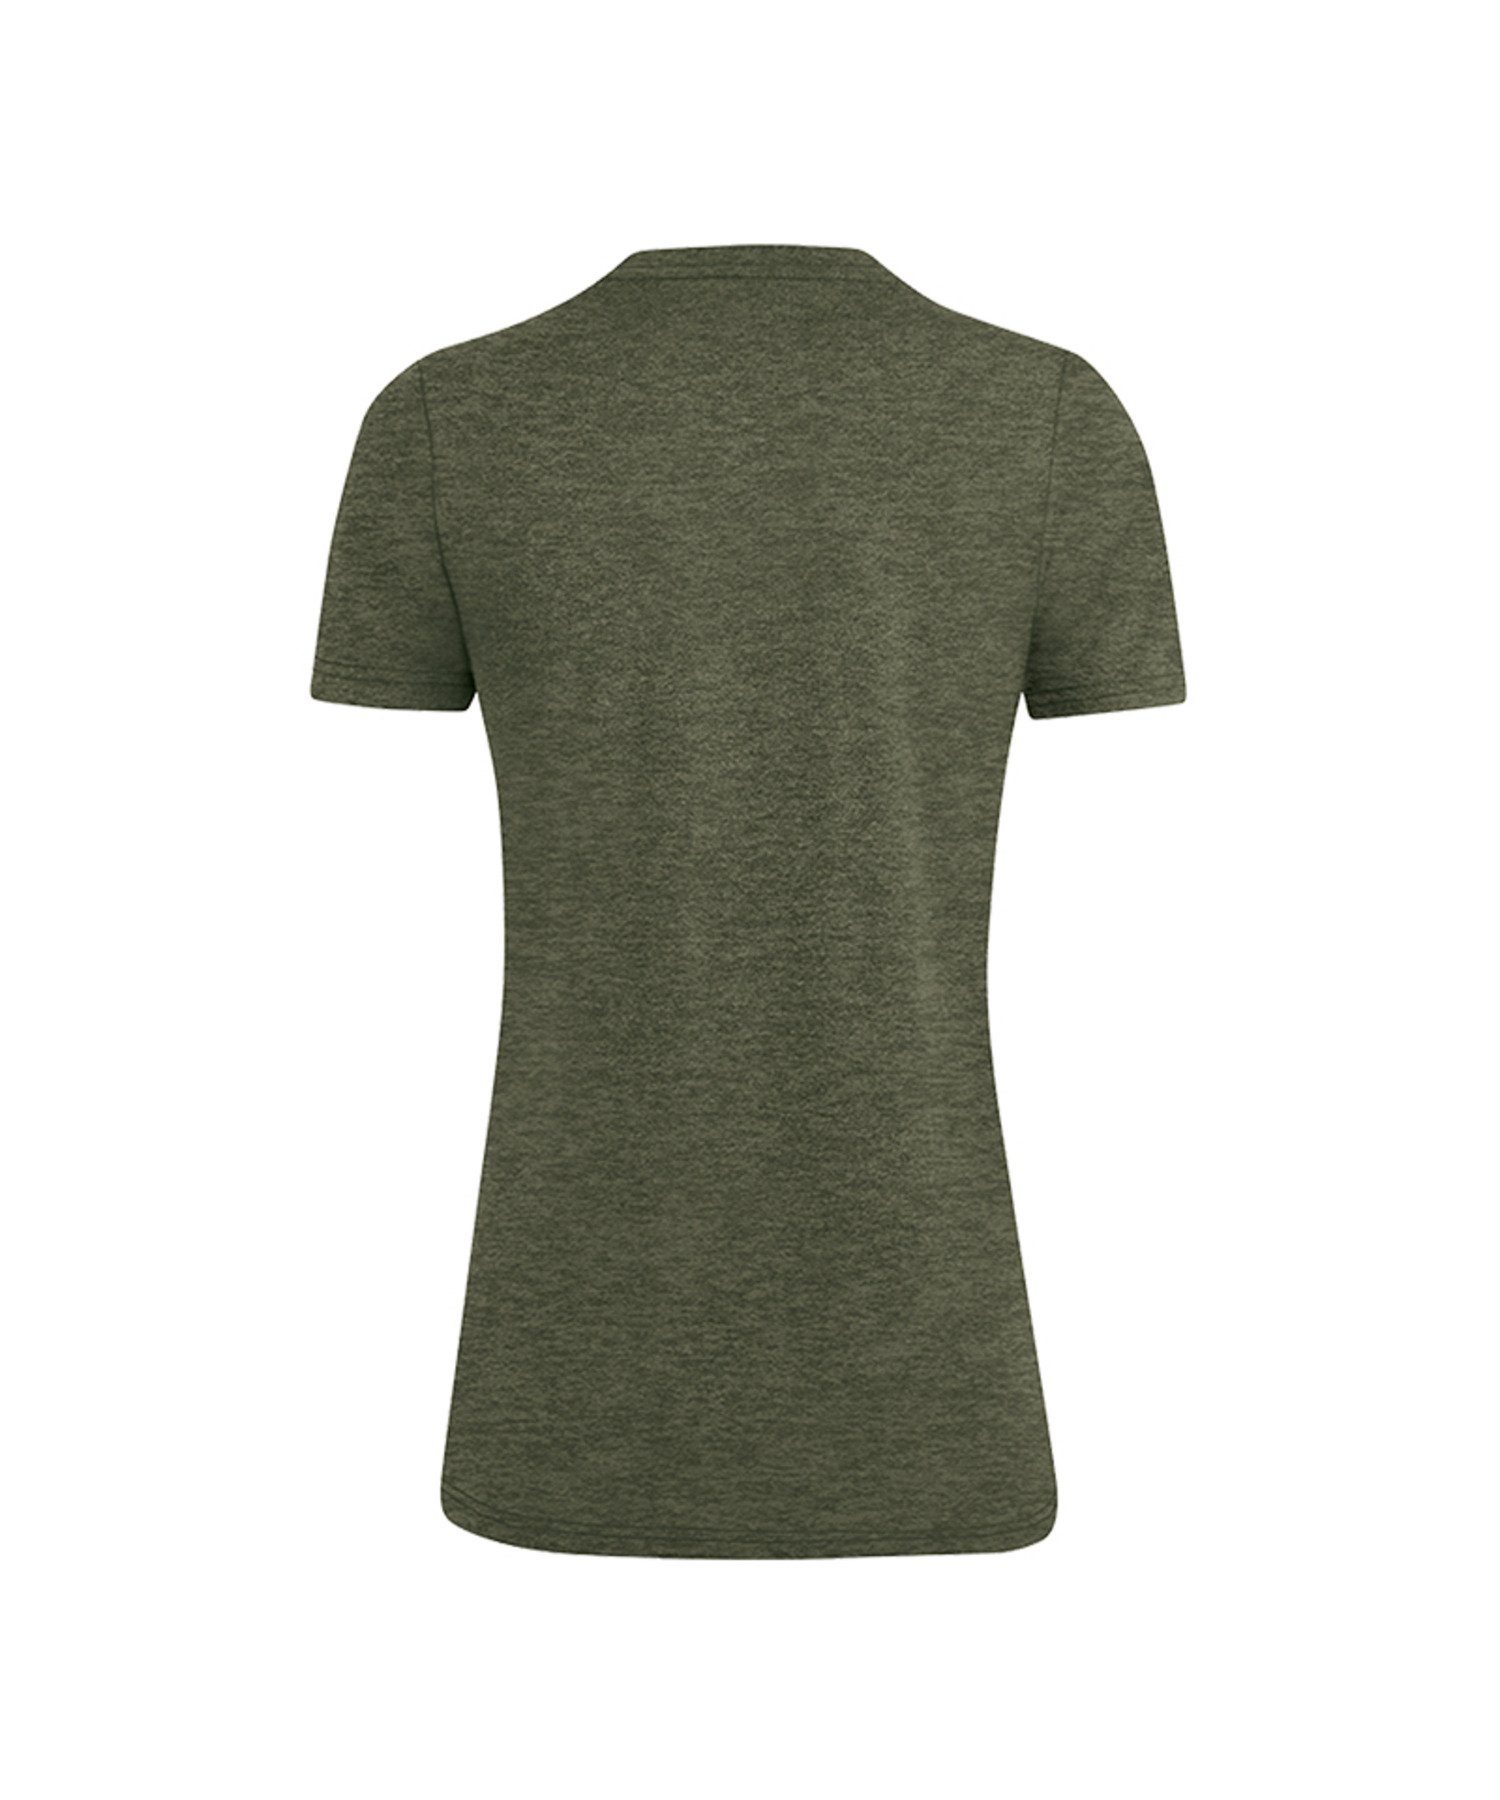 Khaki T-Shirt T-Shirt Basic Jako Damen Premium default